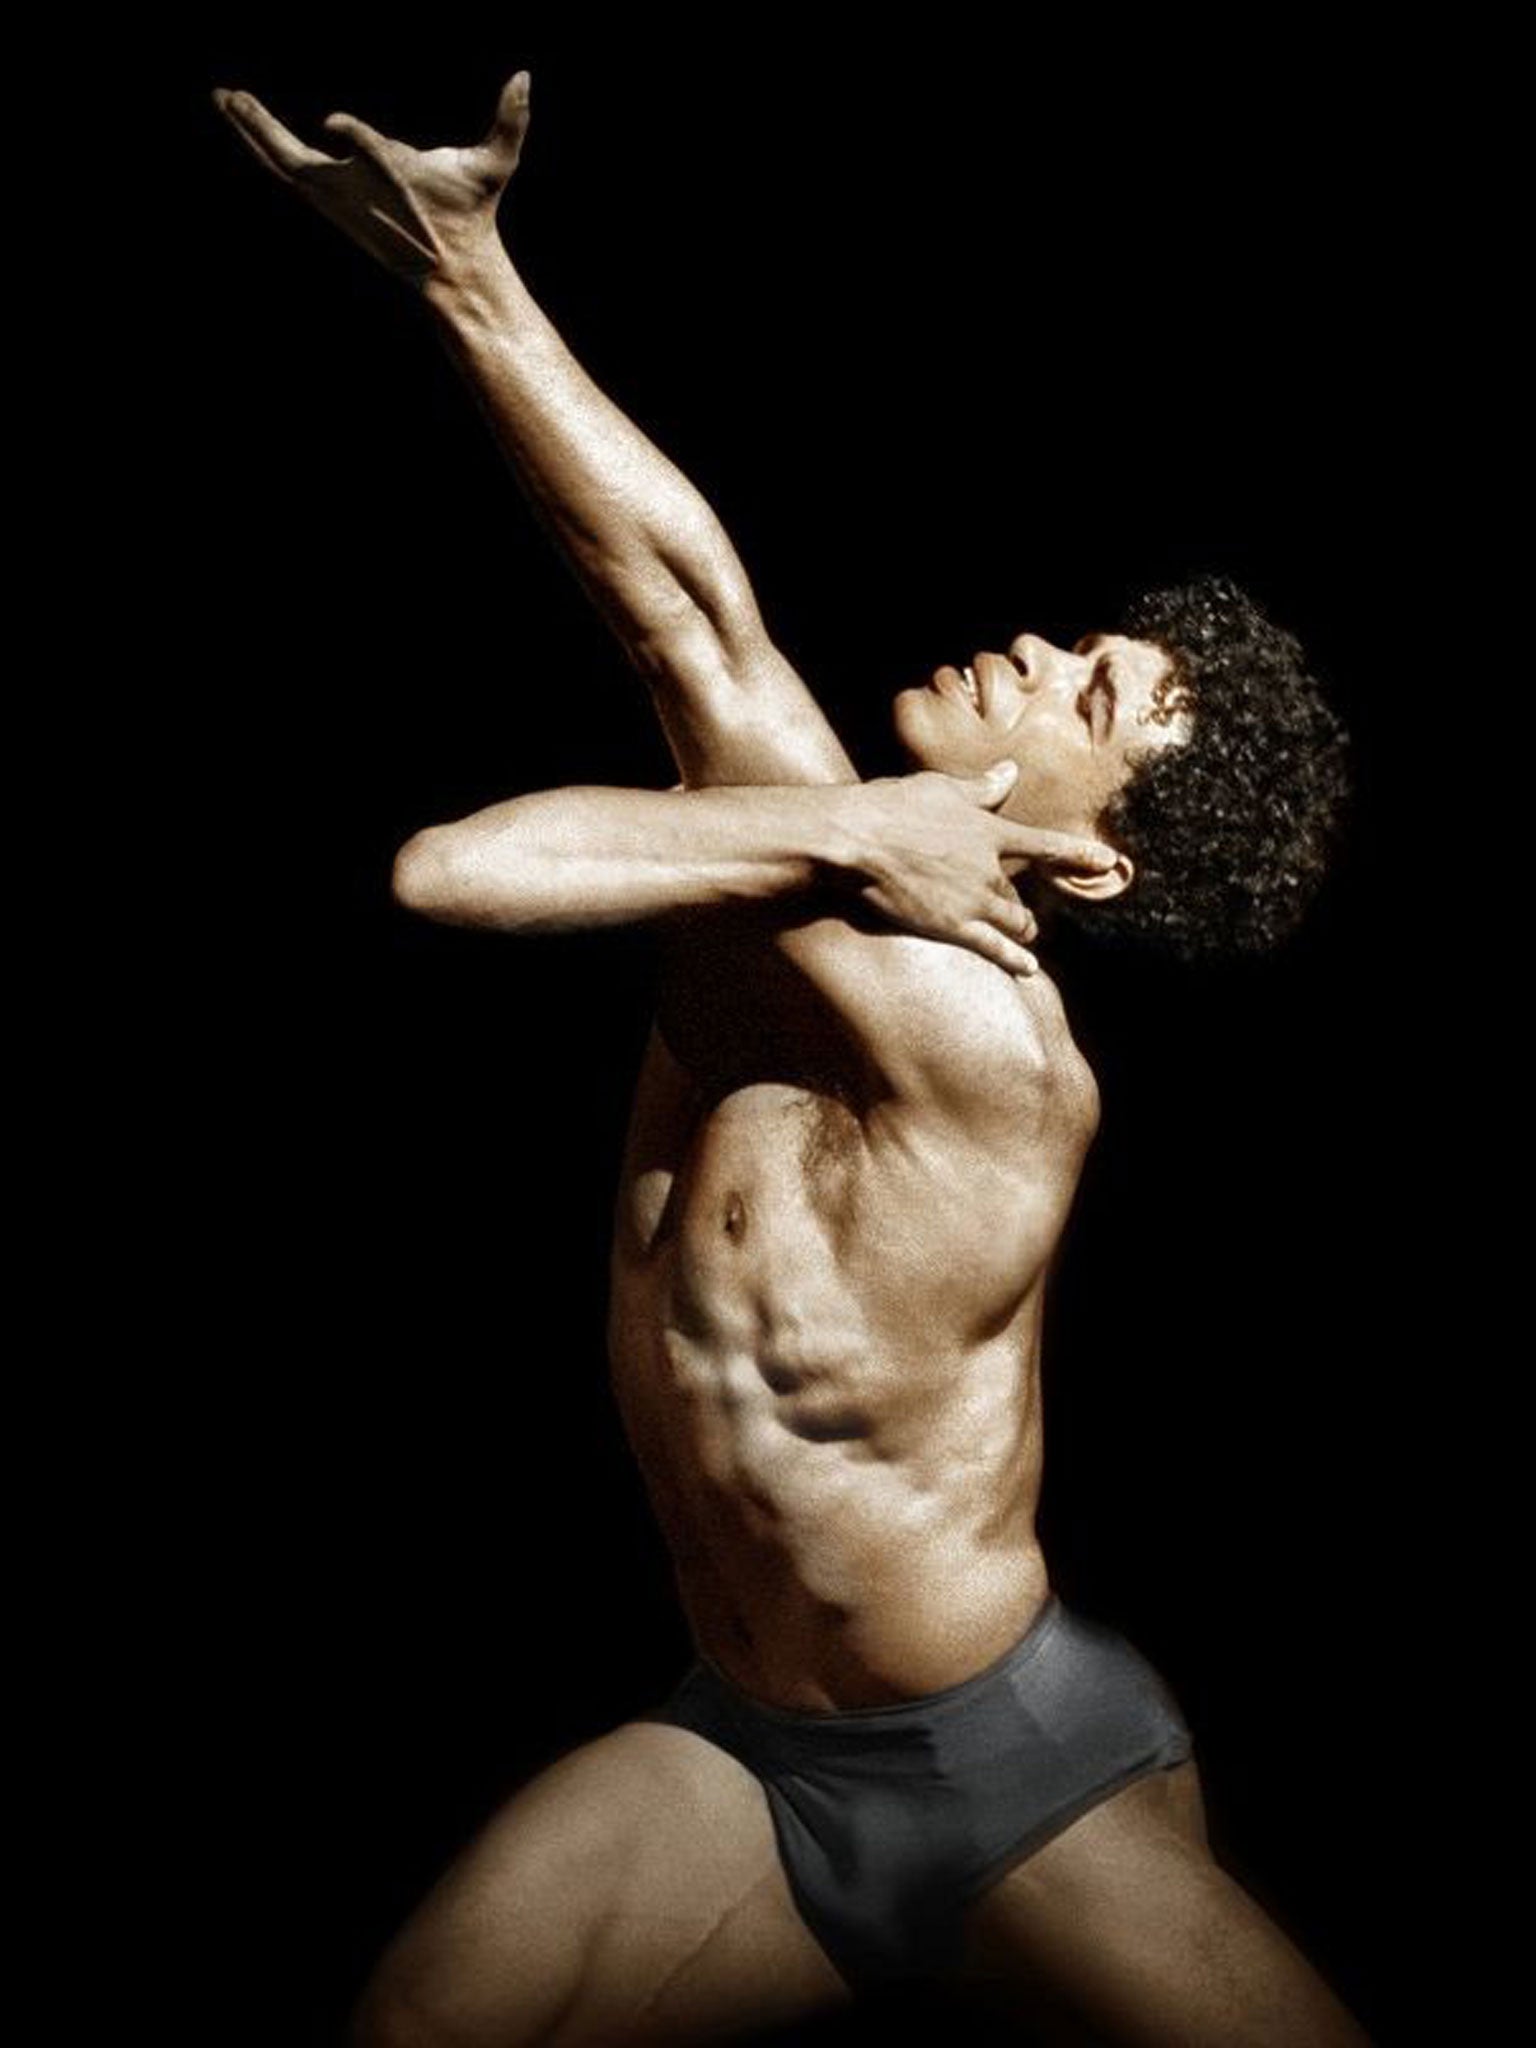 Ballet dancer Carlos Acosta